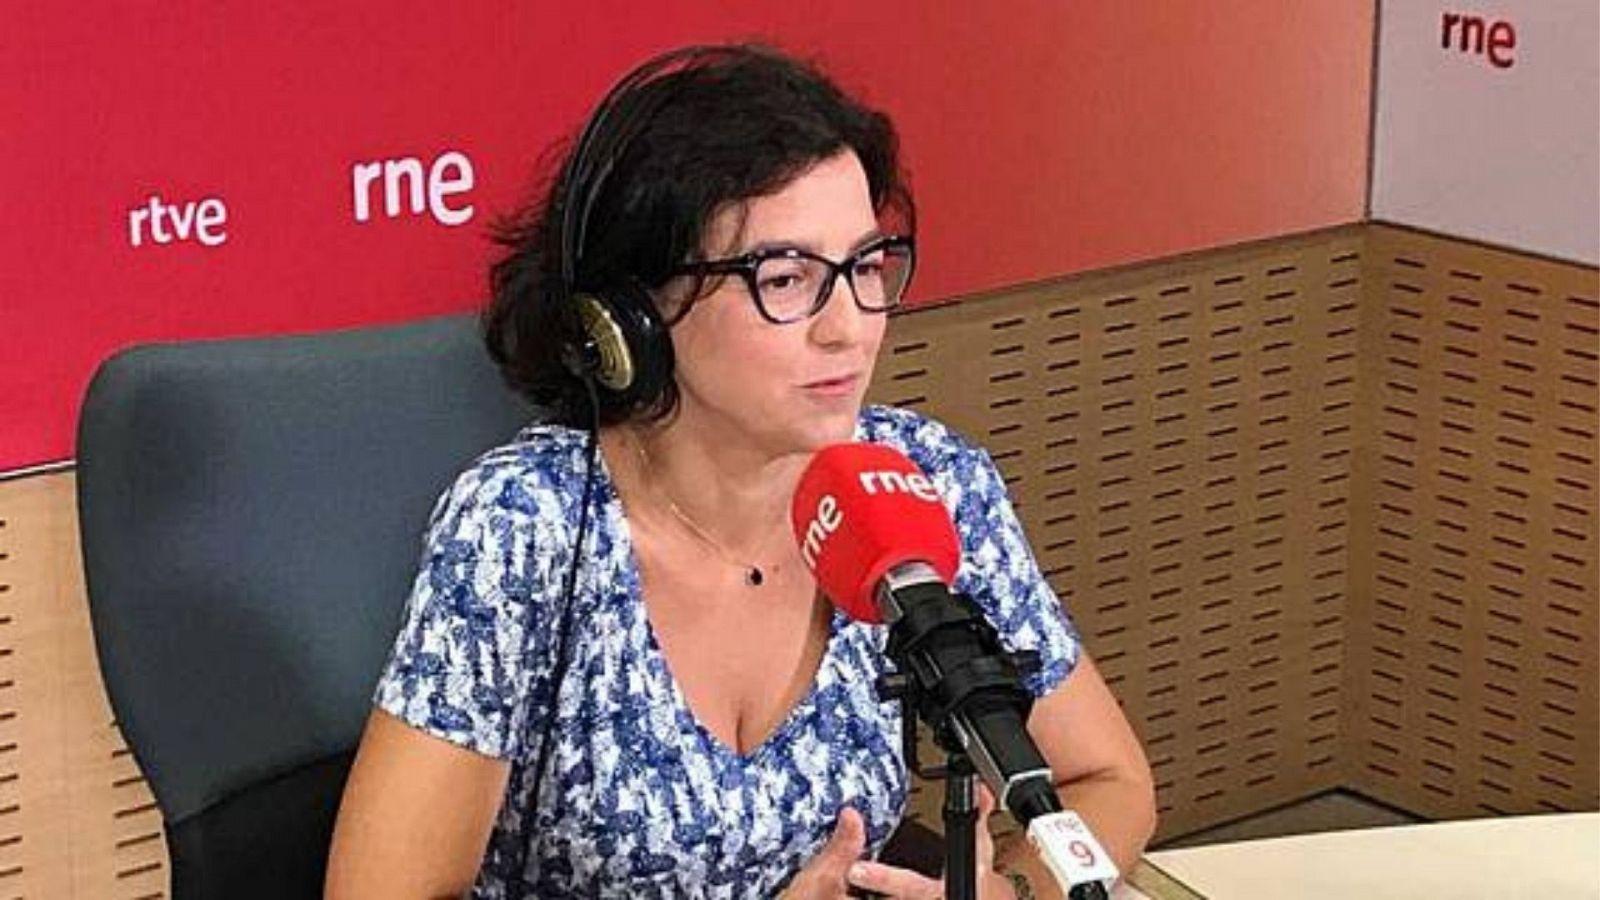 Boletines RNE - Granados, portavoz del PSOE en el Senado: "Cualquier cosa que haya que hablar, allí estaremos" - Escuchar ahora